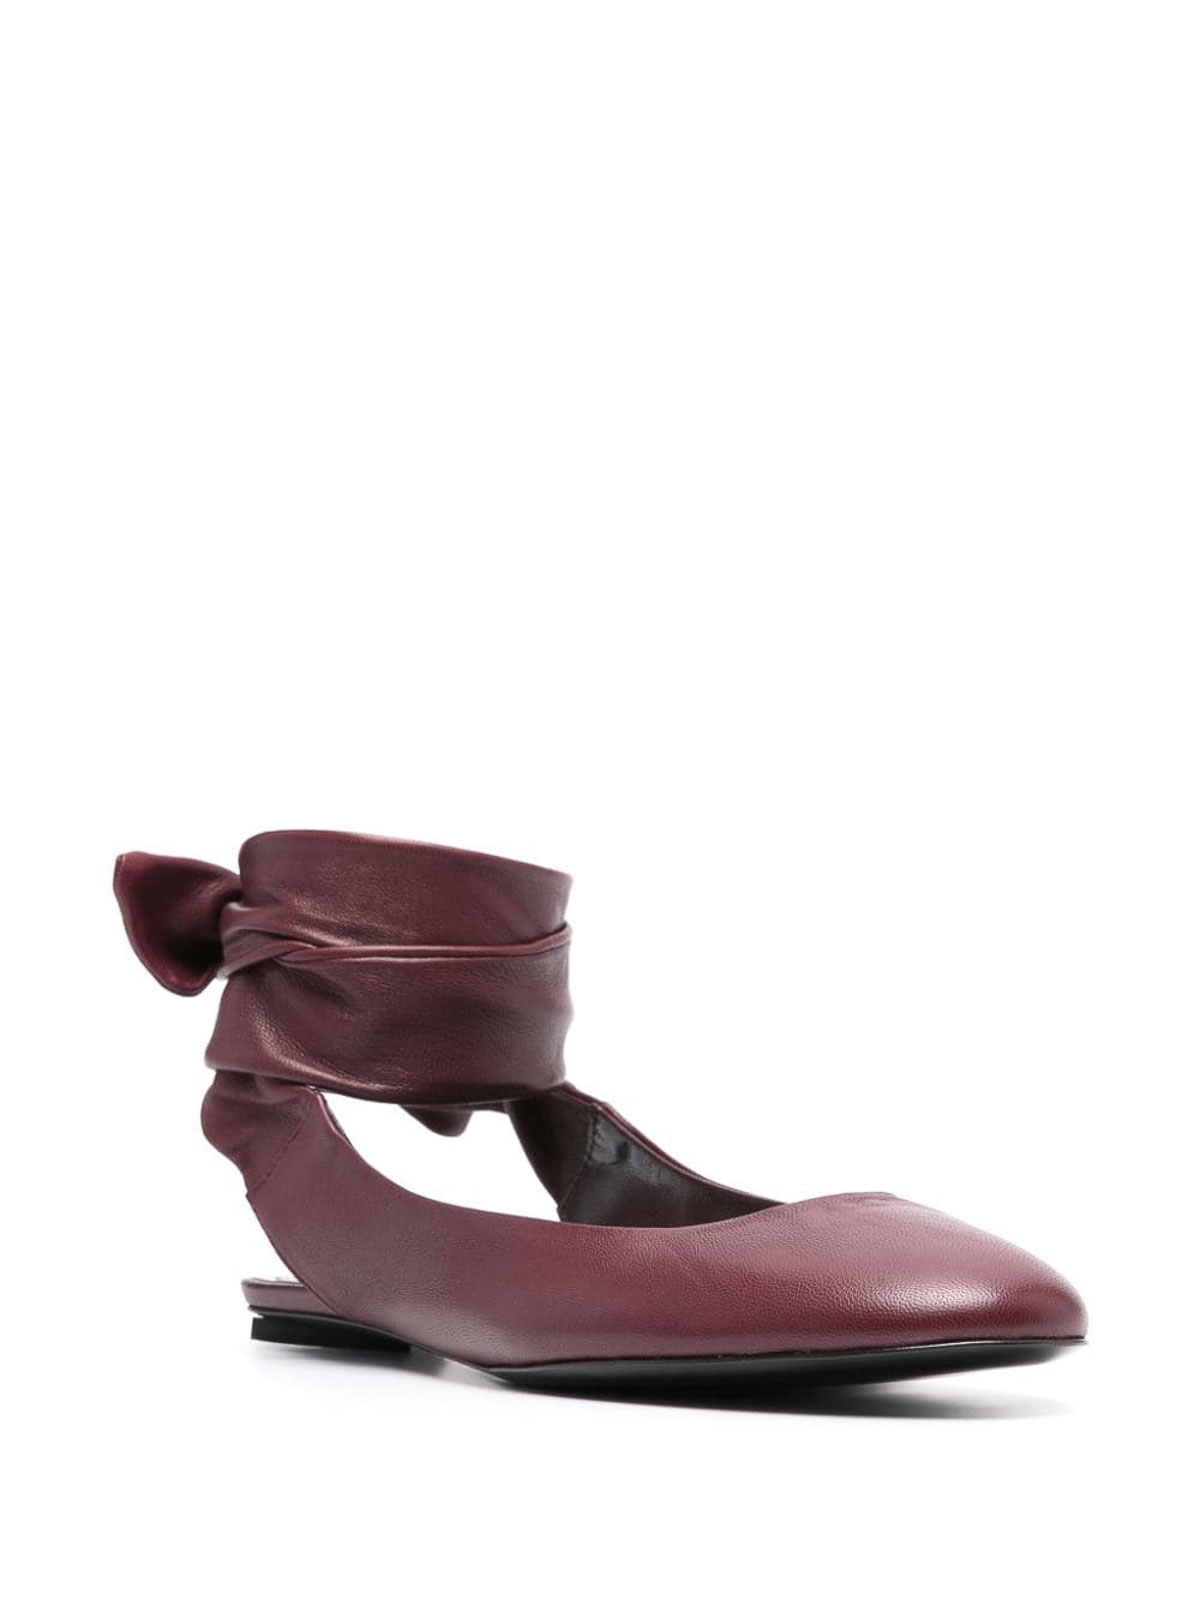 Shop Attico Cloe Leather Ballerina Shoes In Dark Red